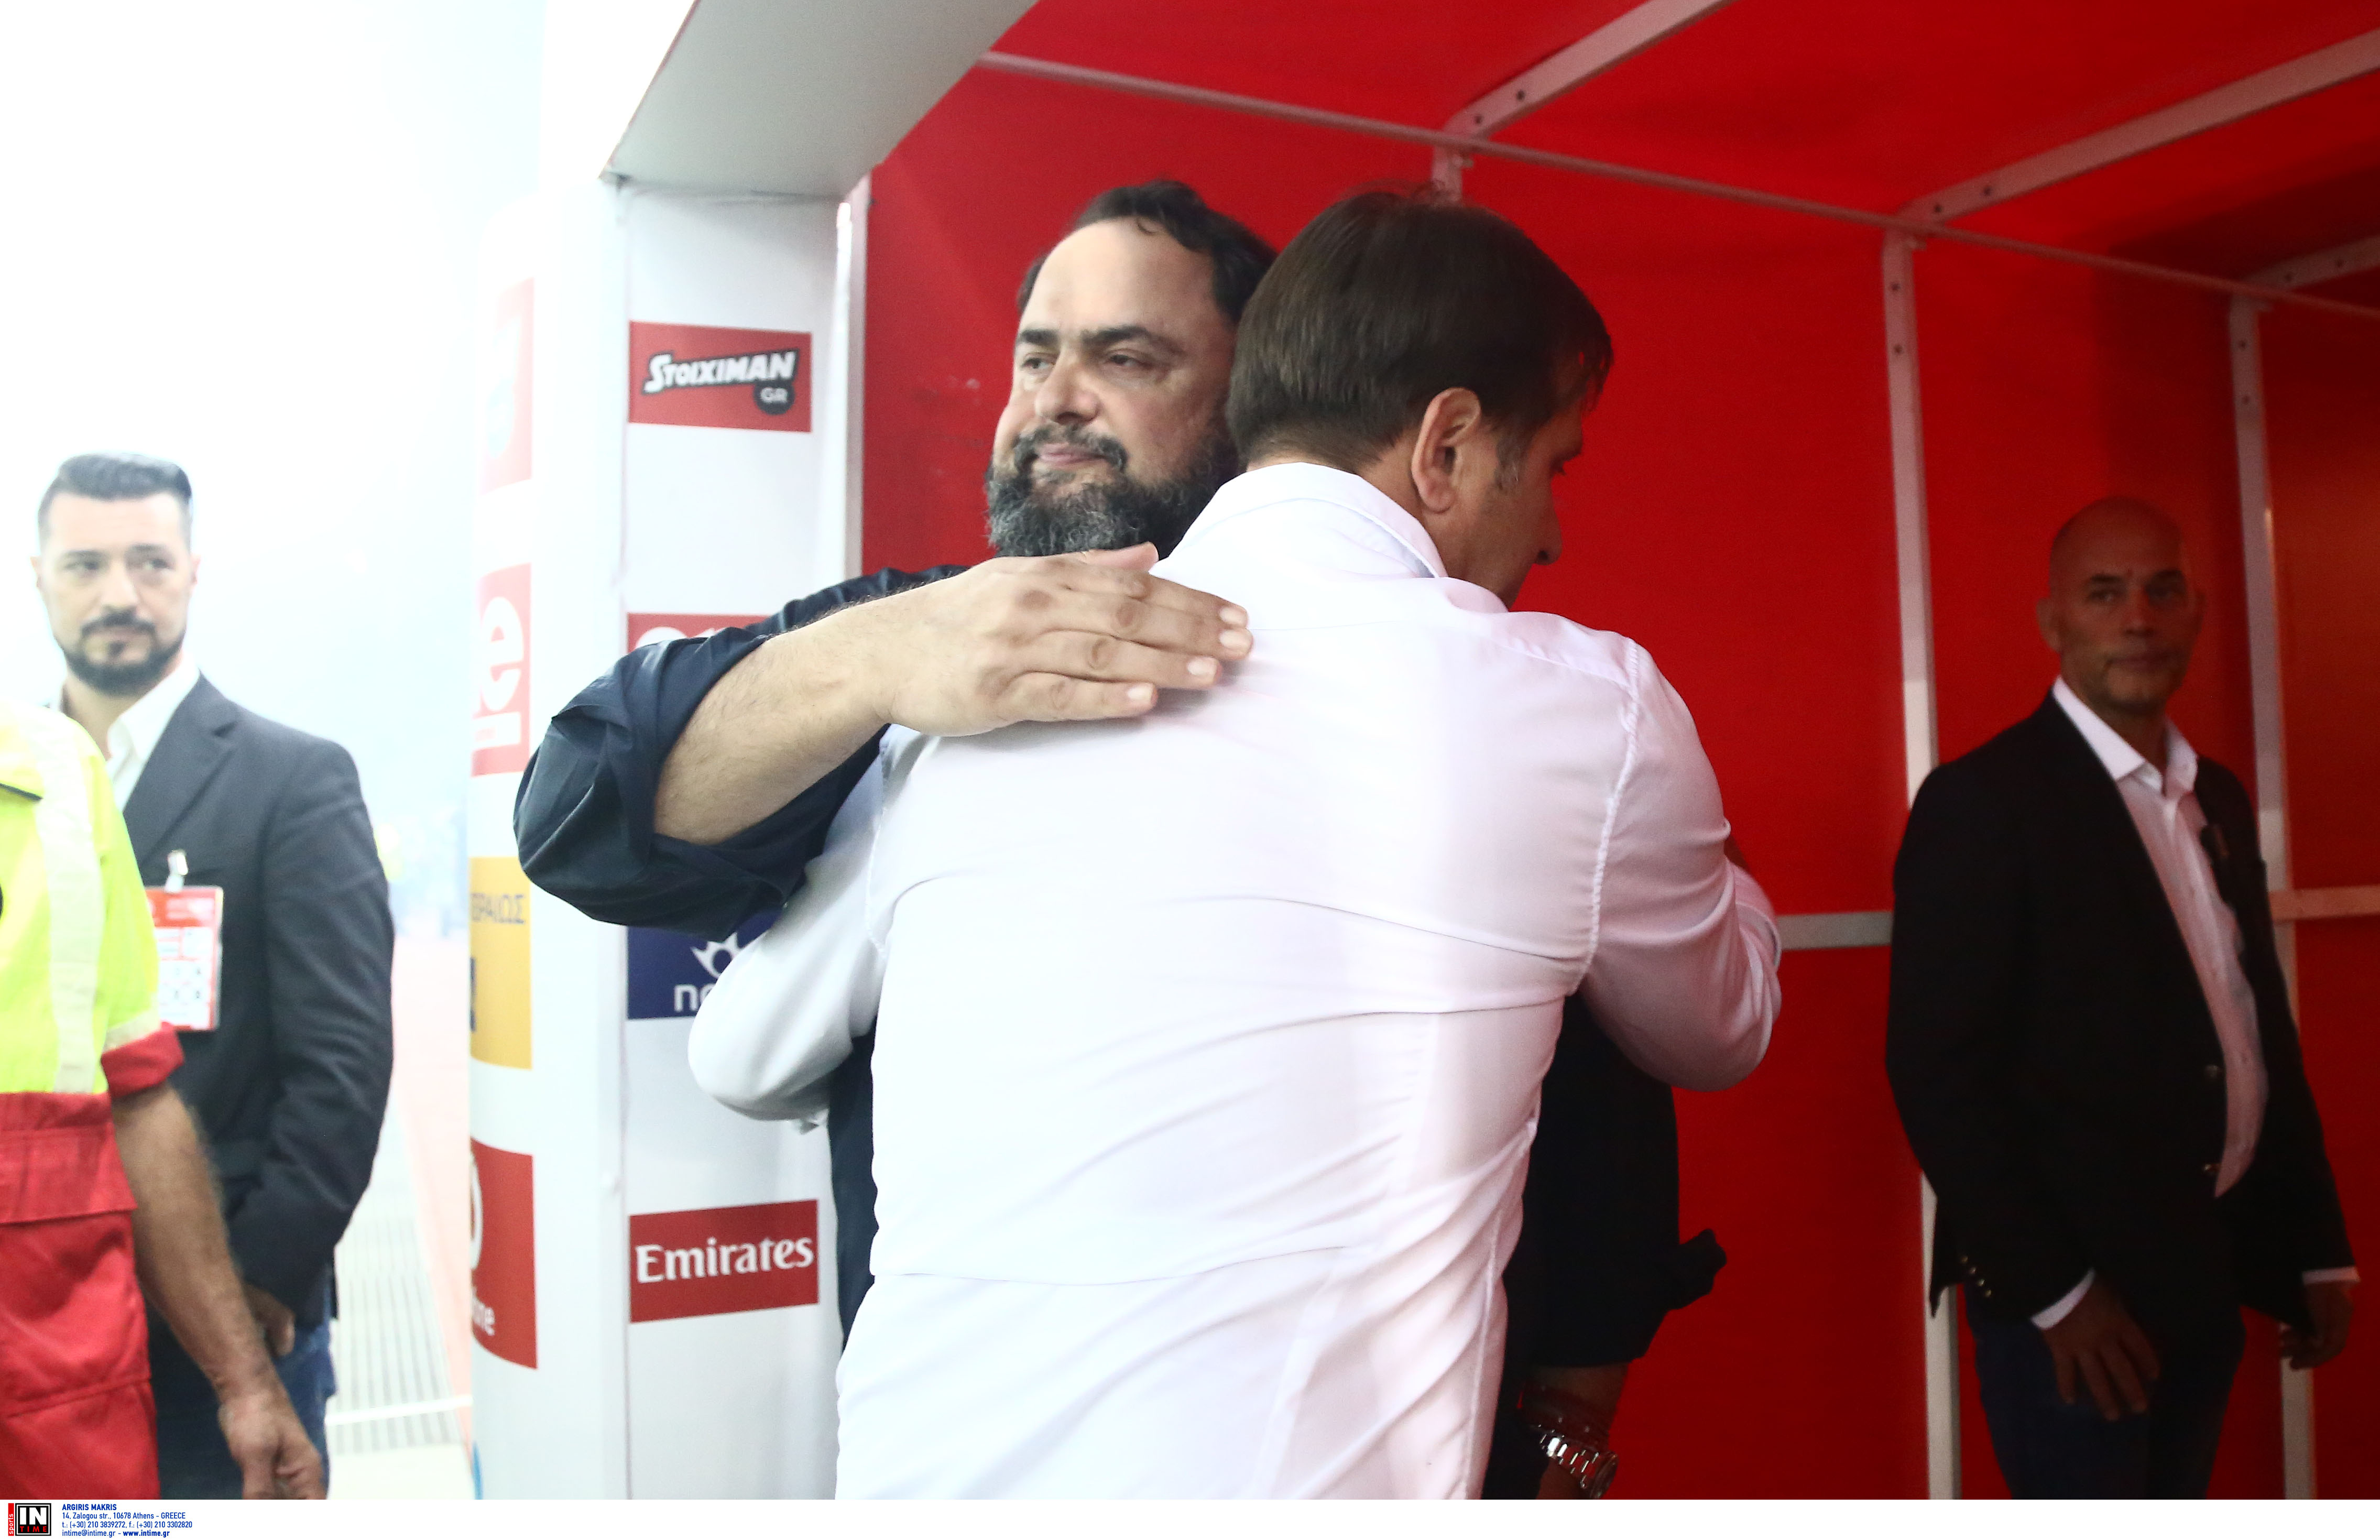 Ολυμπιακός: Αγκαλιά Μαρινάκης και Μαρτίνς μετά τη νίκη επί της ΑΕΚ! [pics]